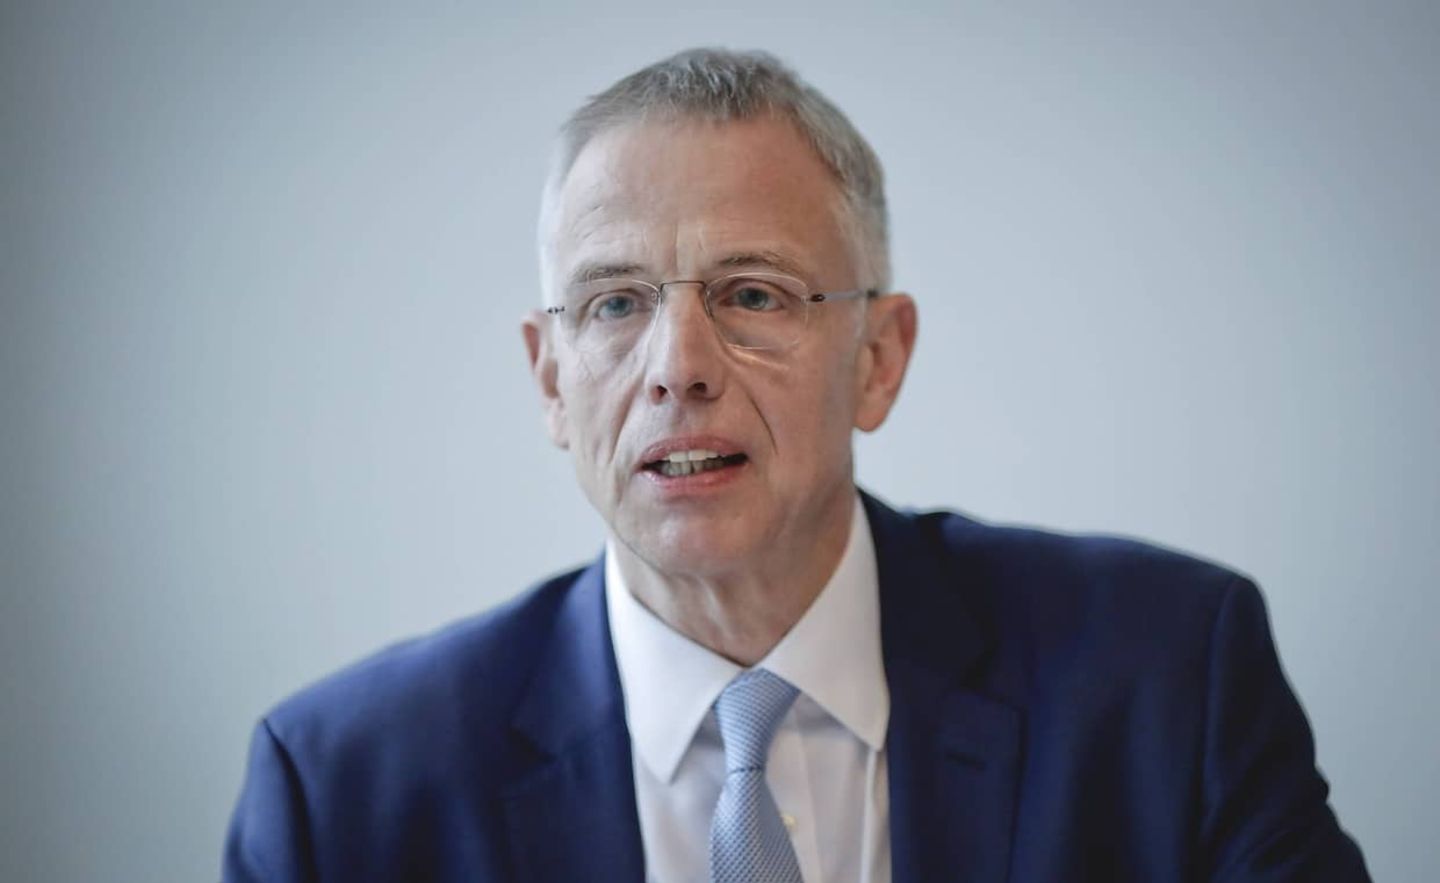 Andreas Krautscheid, Hauptgeschäftsführer und Mitglied des Vorstands beim Bundesverband deutscher Banken